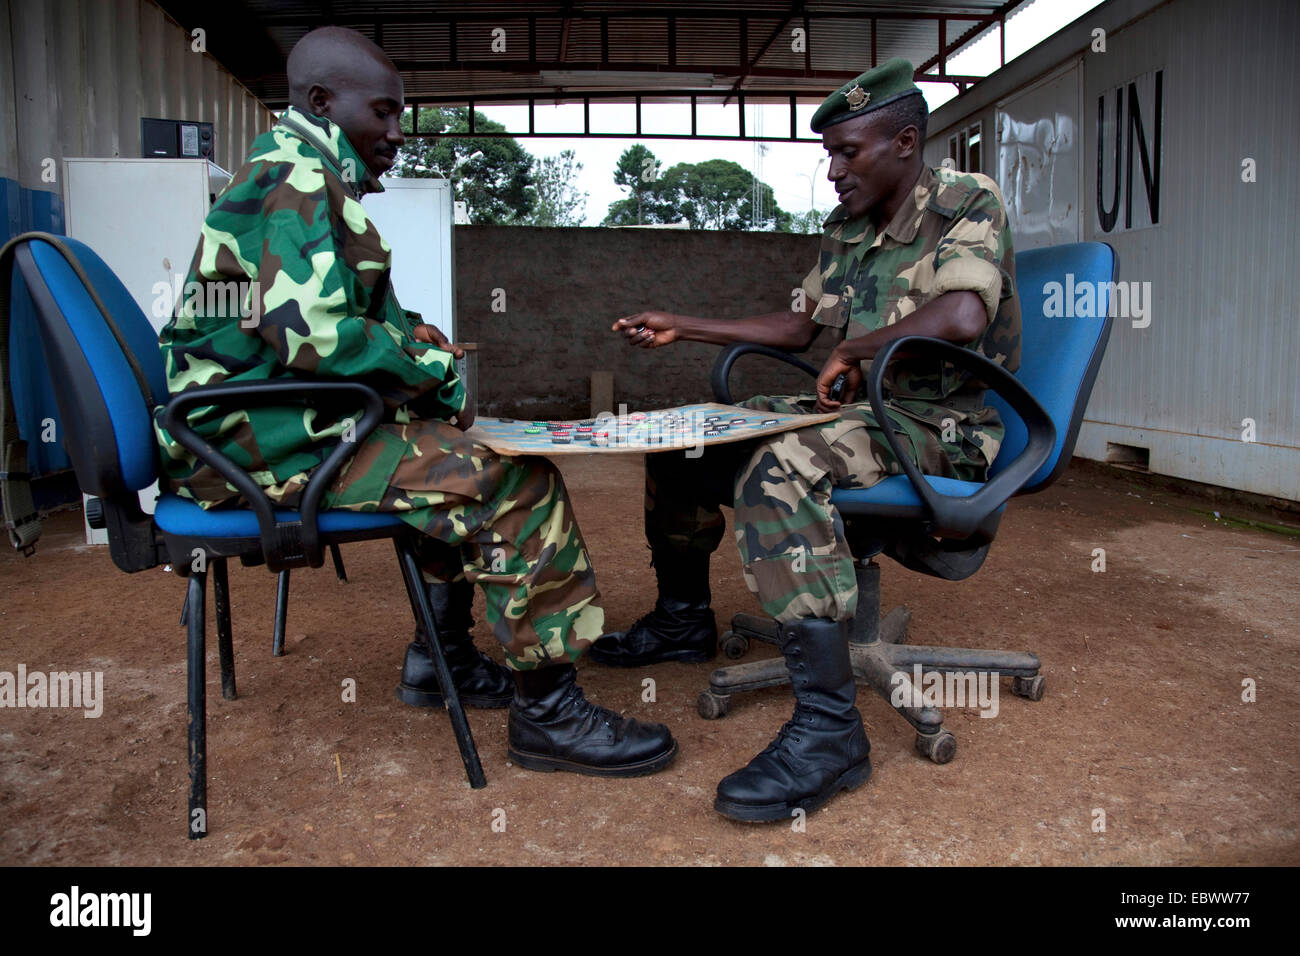 Dos soldados responsables de la seguridad de un campo buero de la ONU están desempeñando los borradores entre recipientes con el logotipo de la organización, Burundi, Makamba, Makamba Foto de stock